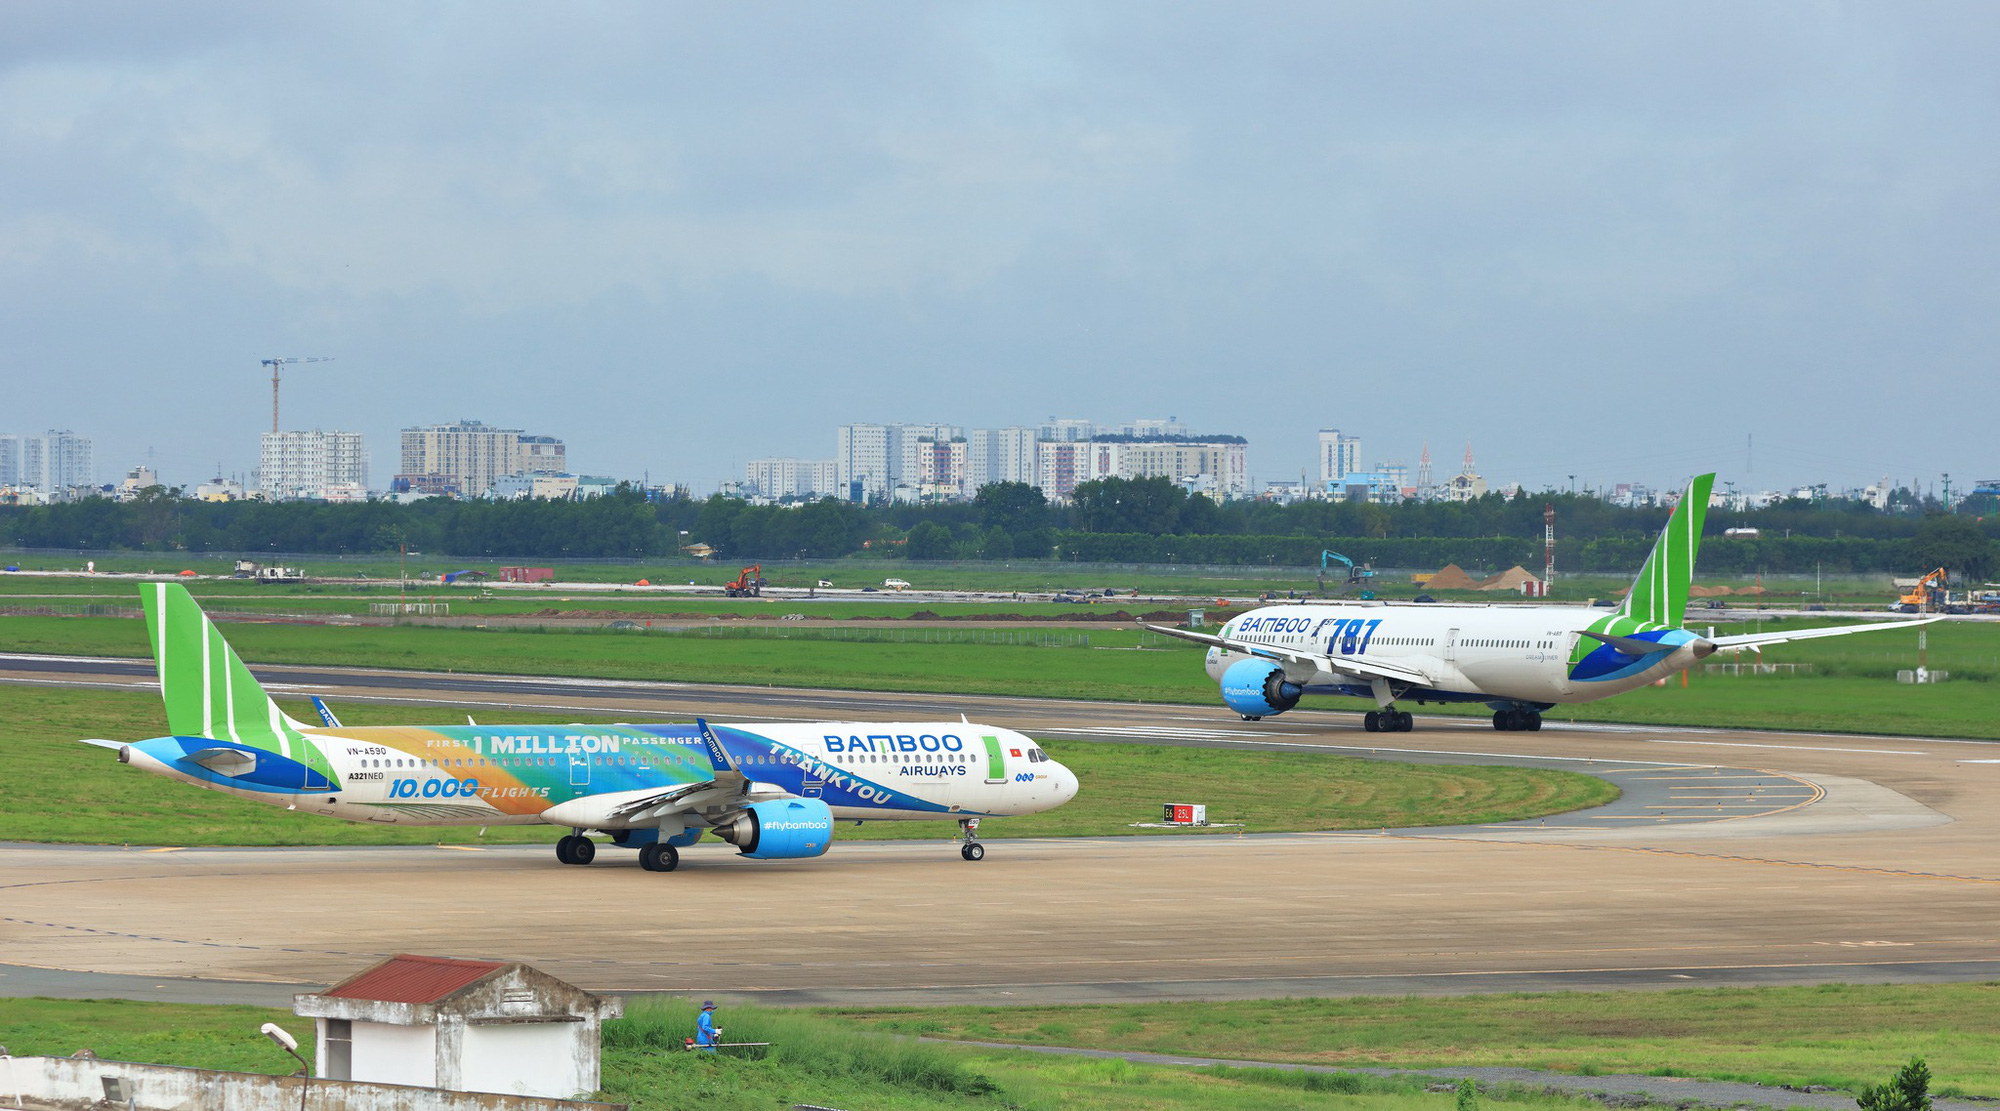 Bamboo Airways triển khai đường bay thẳng thường lệ Hà Nội - Singapore, mở bán vé từ 24/3 - Ảnh 3.